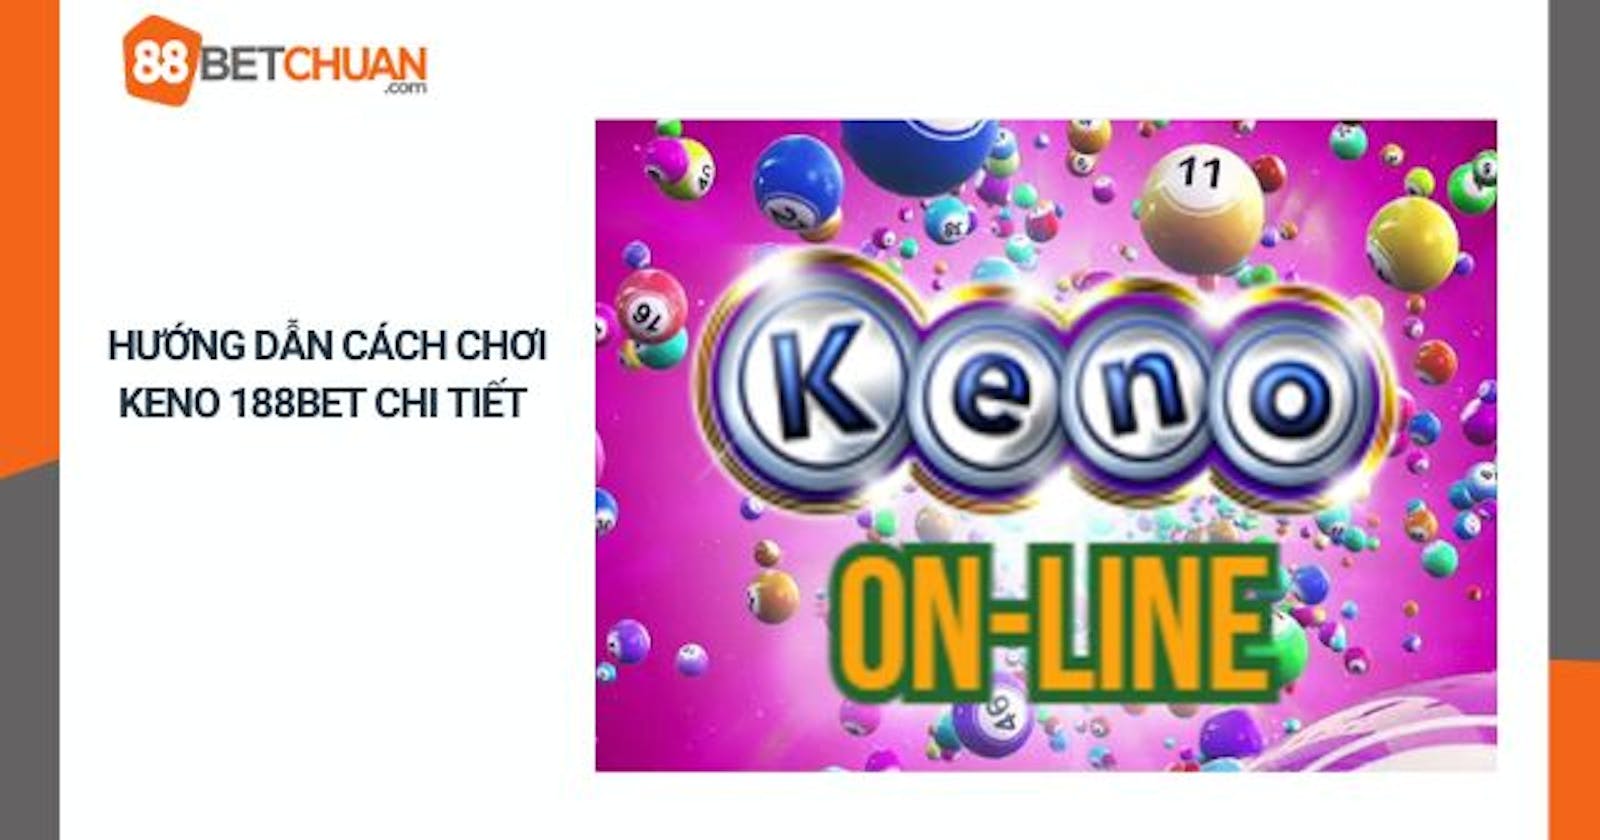 Keno 188bet - Trò chơi giải trí đơn giản, hấp dẫn hiện nay tại 88betchuan.